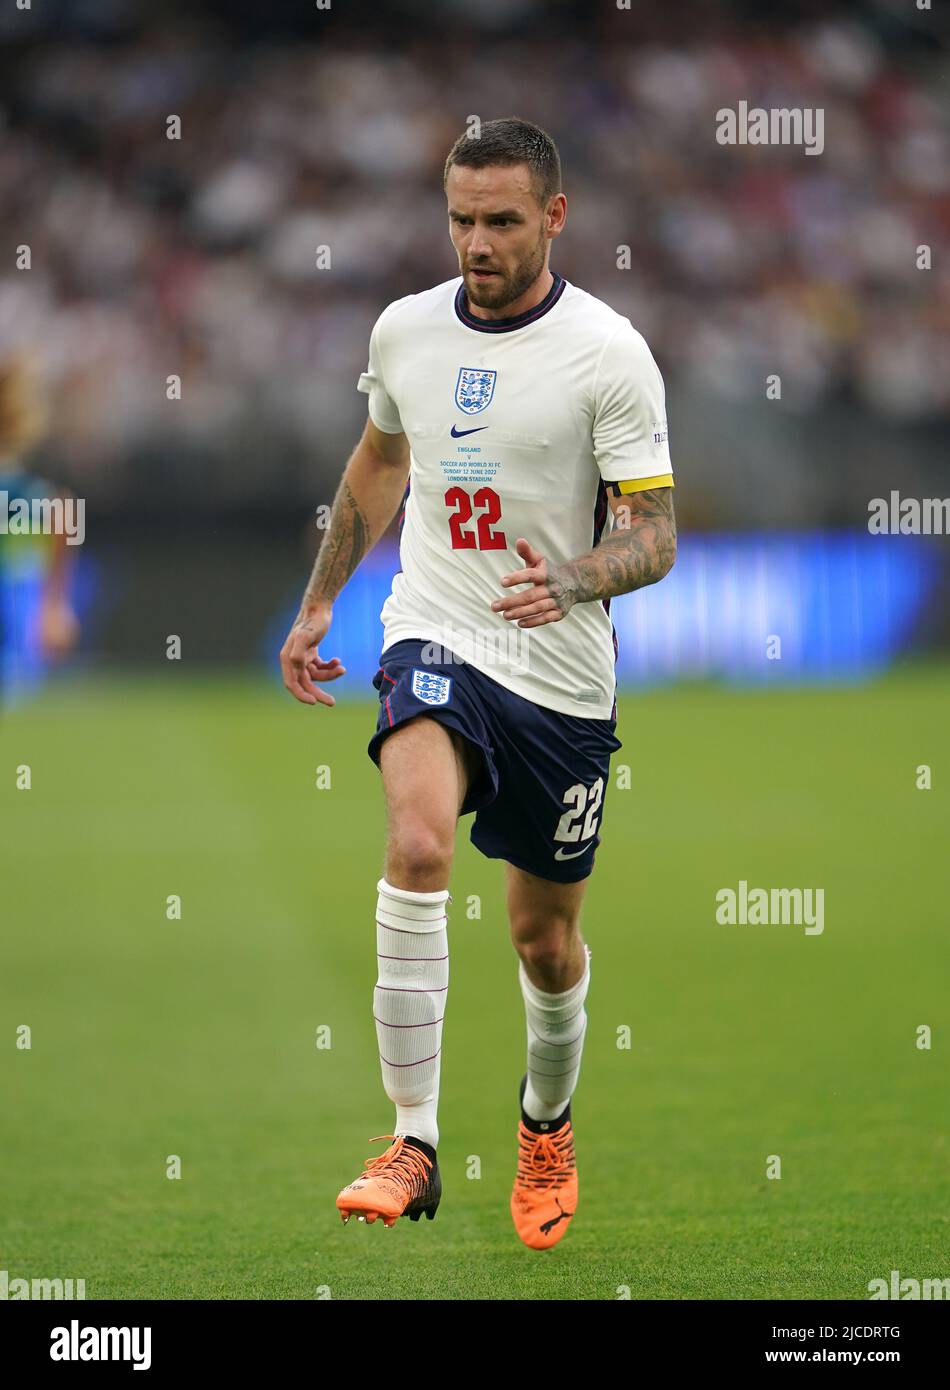 Le Liam Payne d'Angleterre pendant le match de football de l'UNICEF au London Stadium, Londres. Date de la photo: Dimanche 12 juin 2022. Banque D'Images